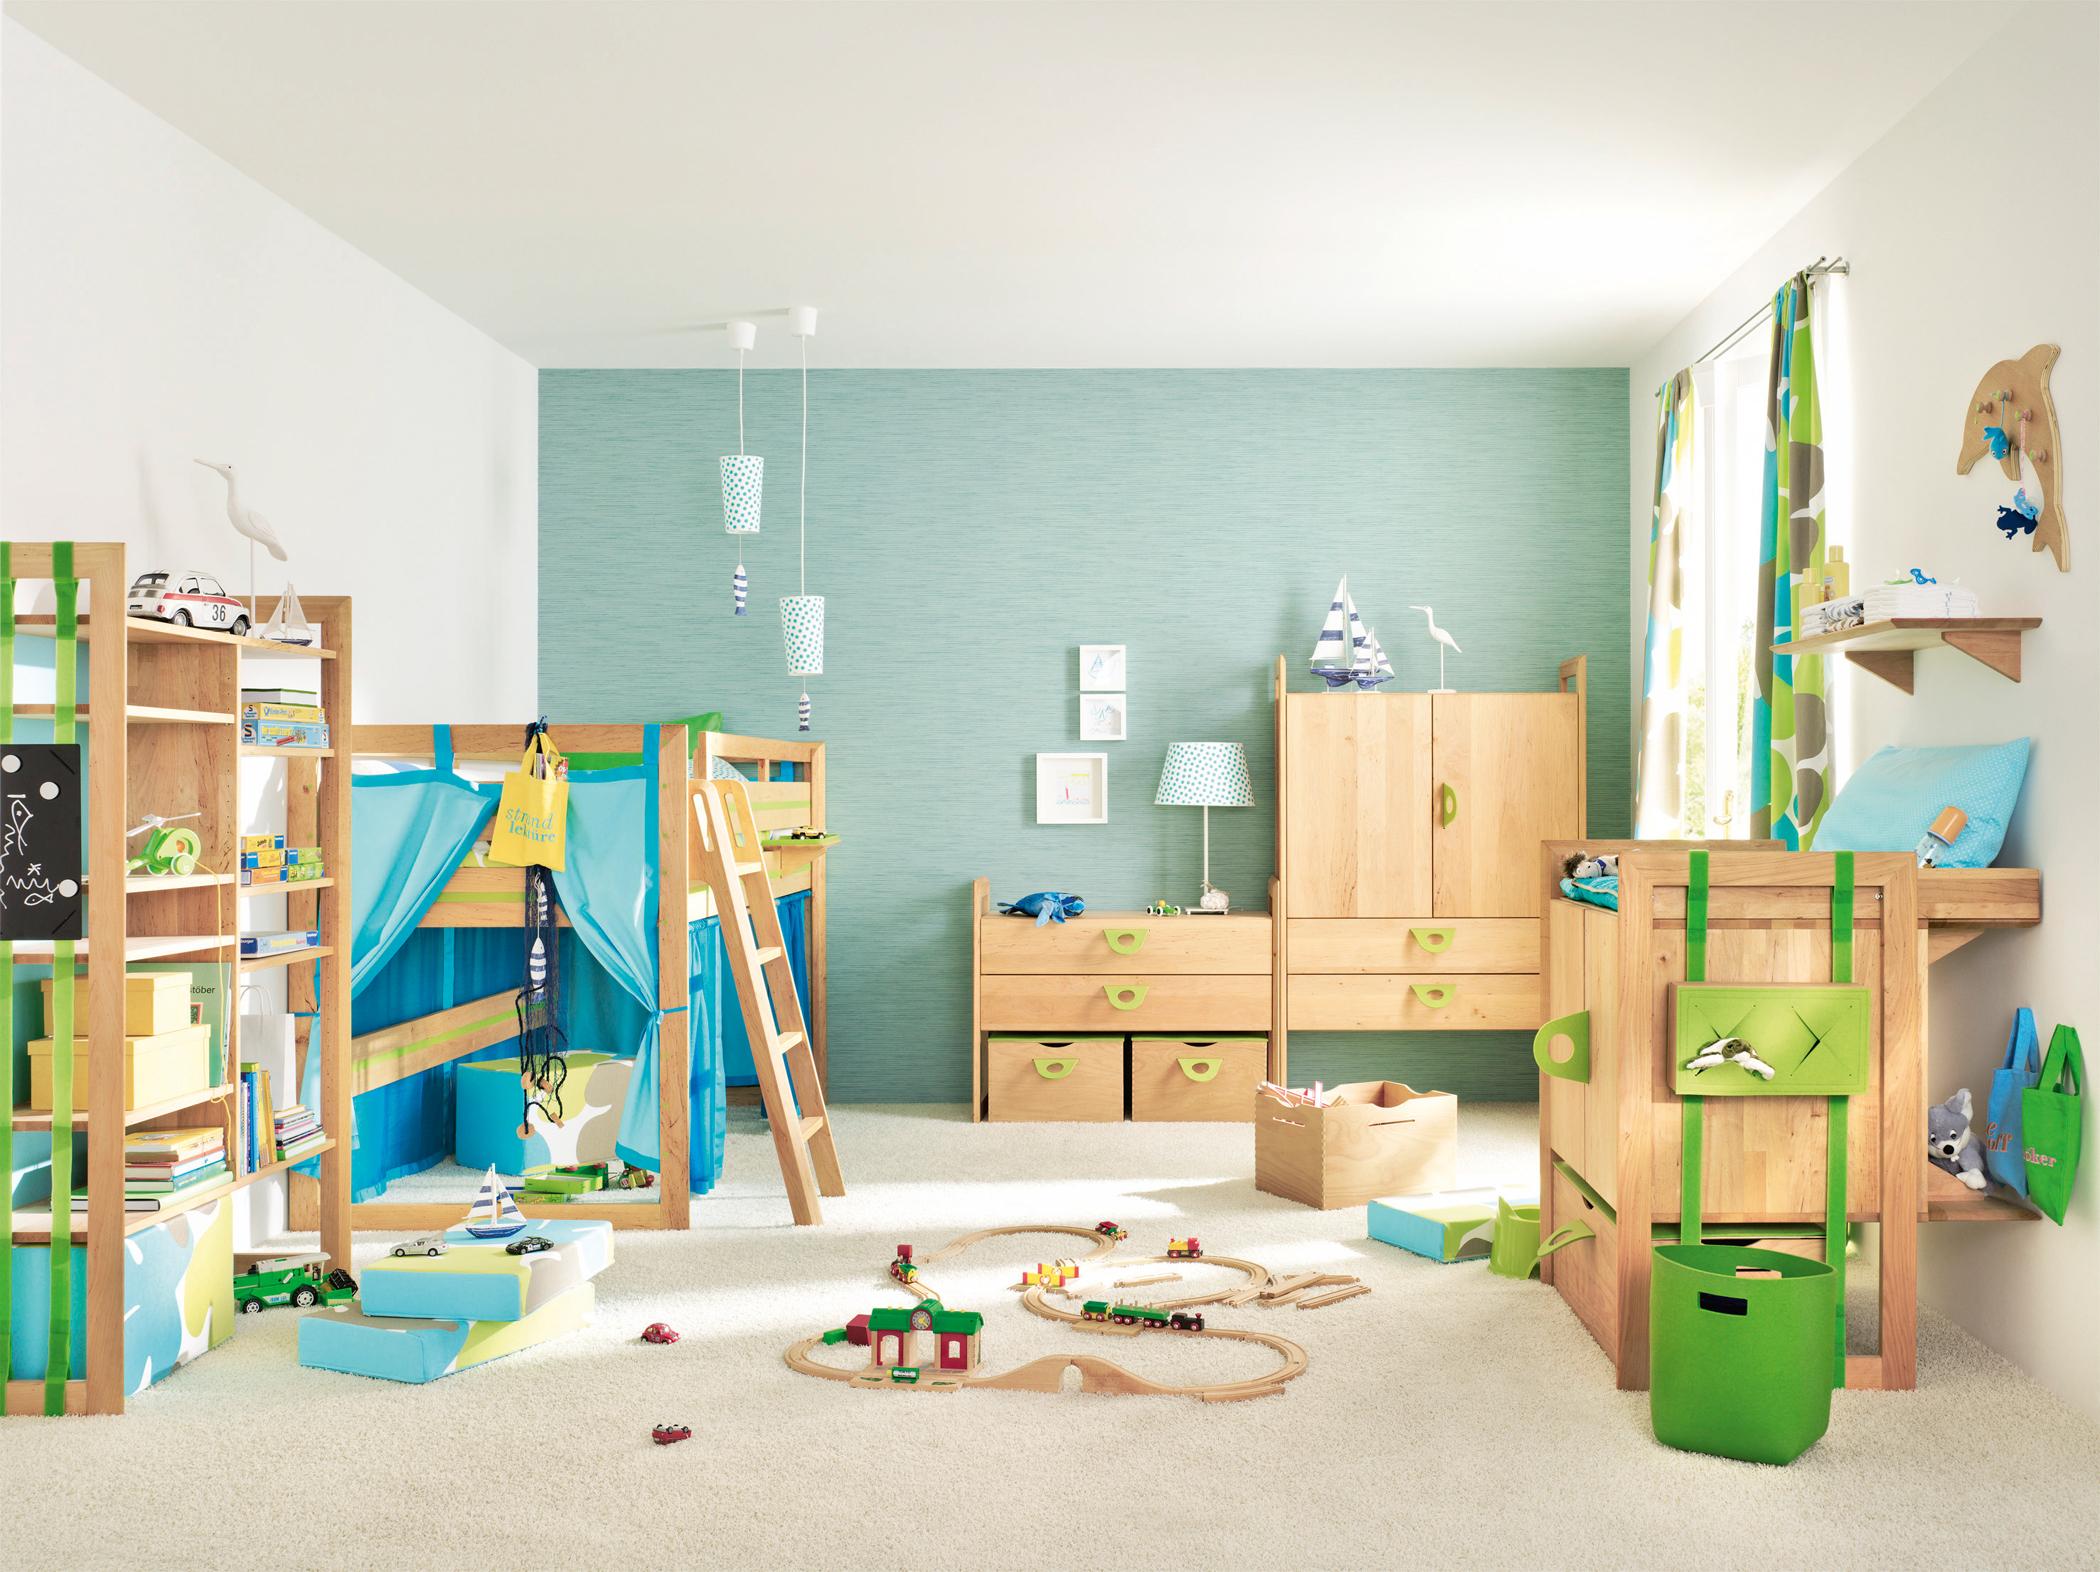 Holzmöbel im Kinderzimmer mit türkisfarbener Wand #holzregal #hochbett ©Team 7